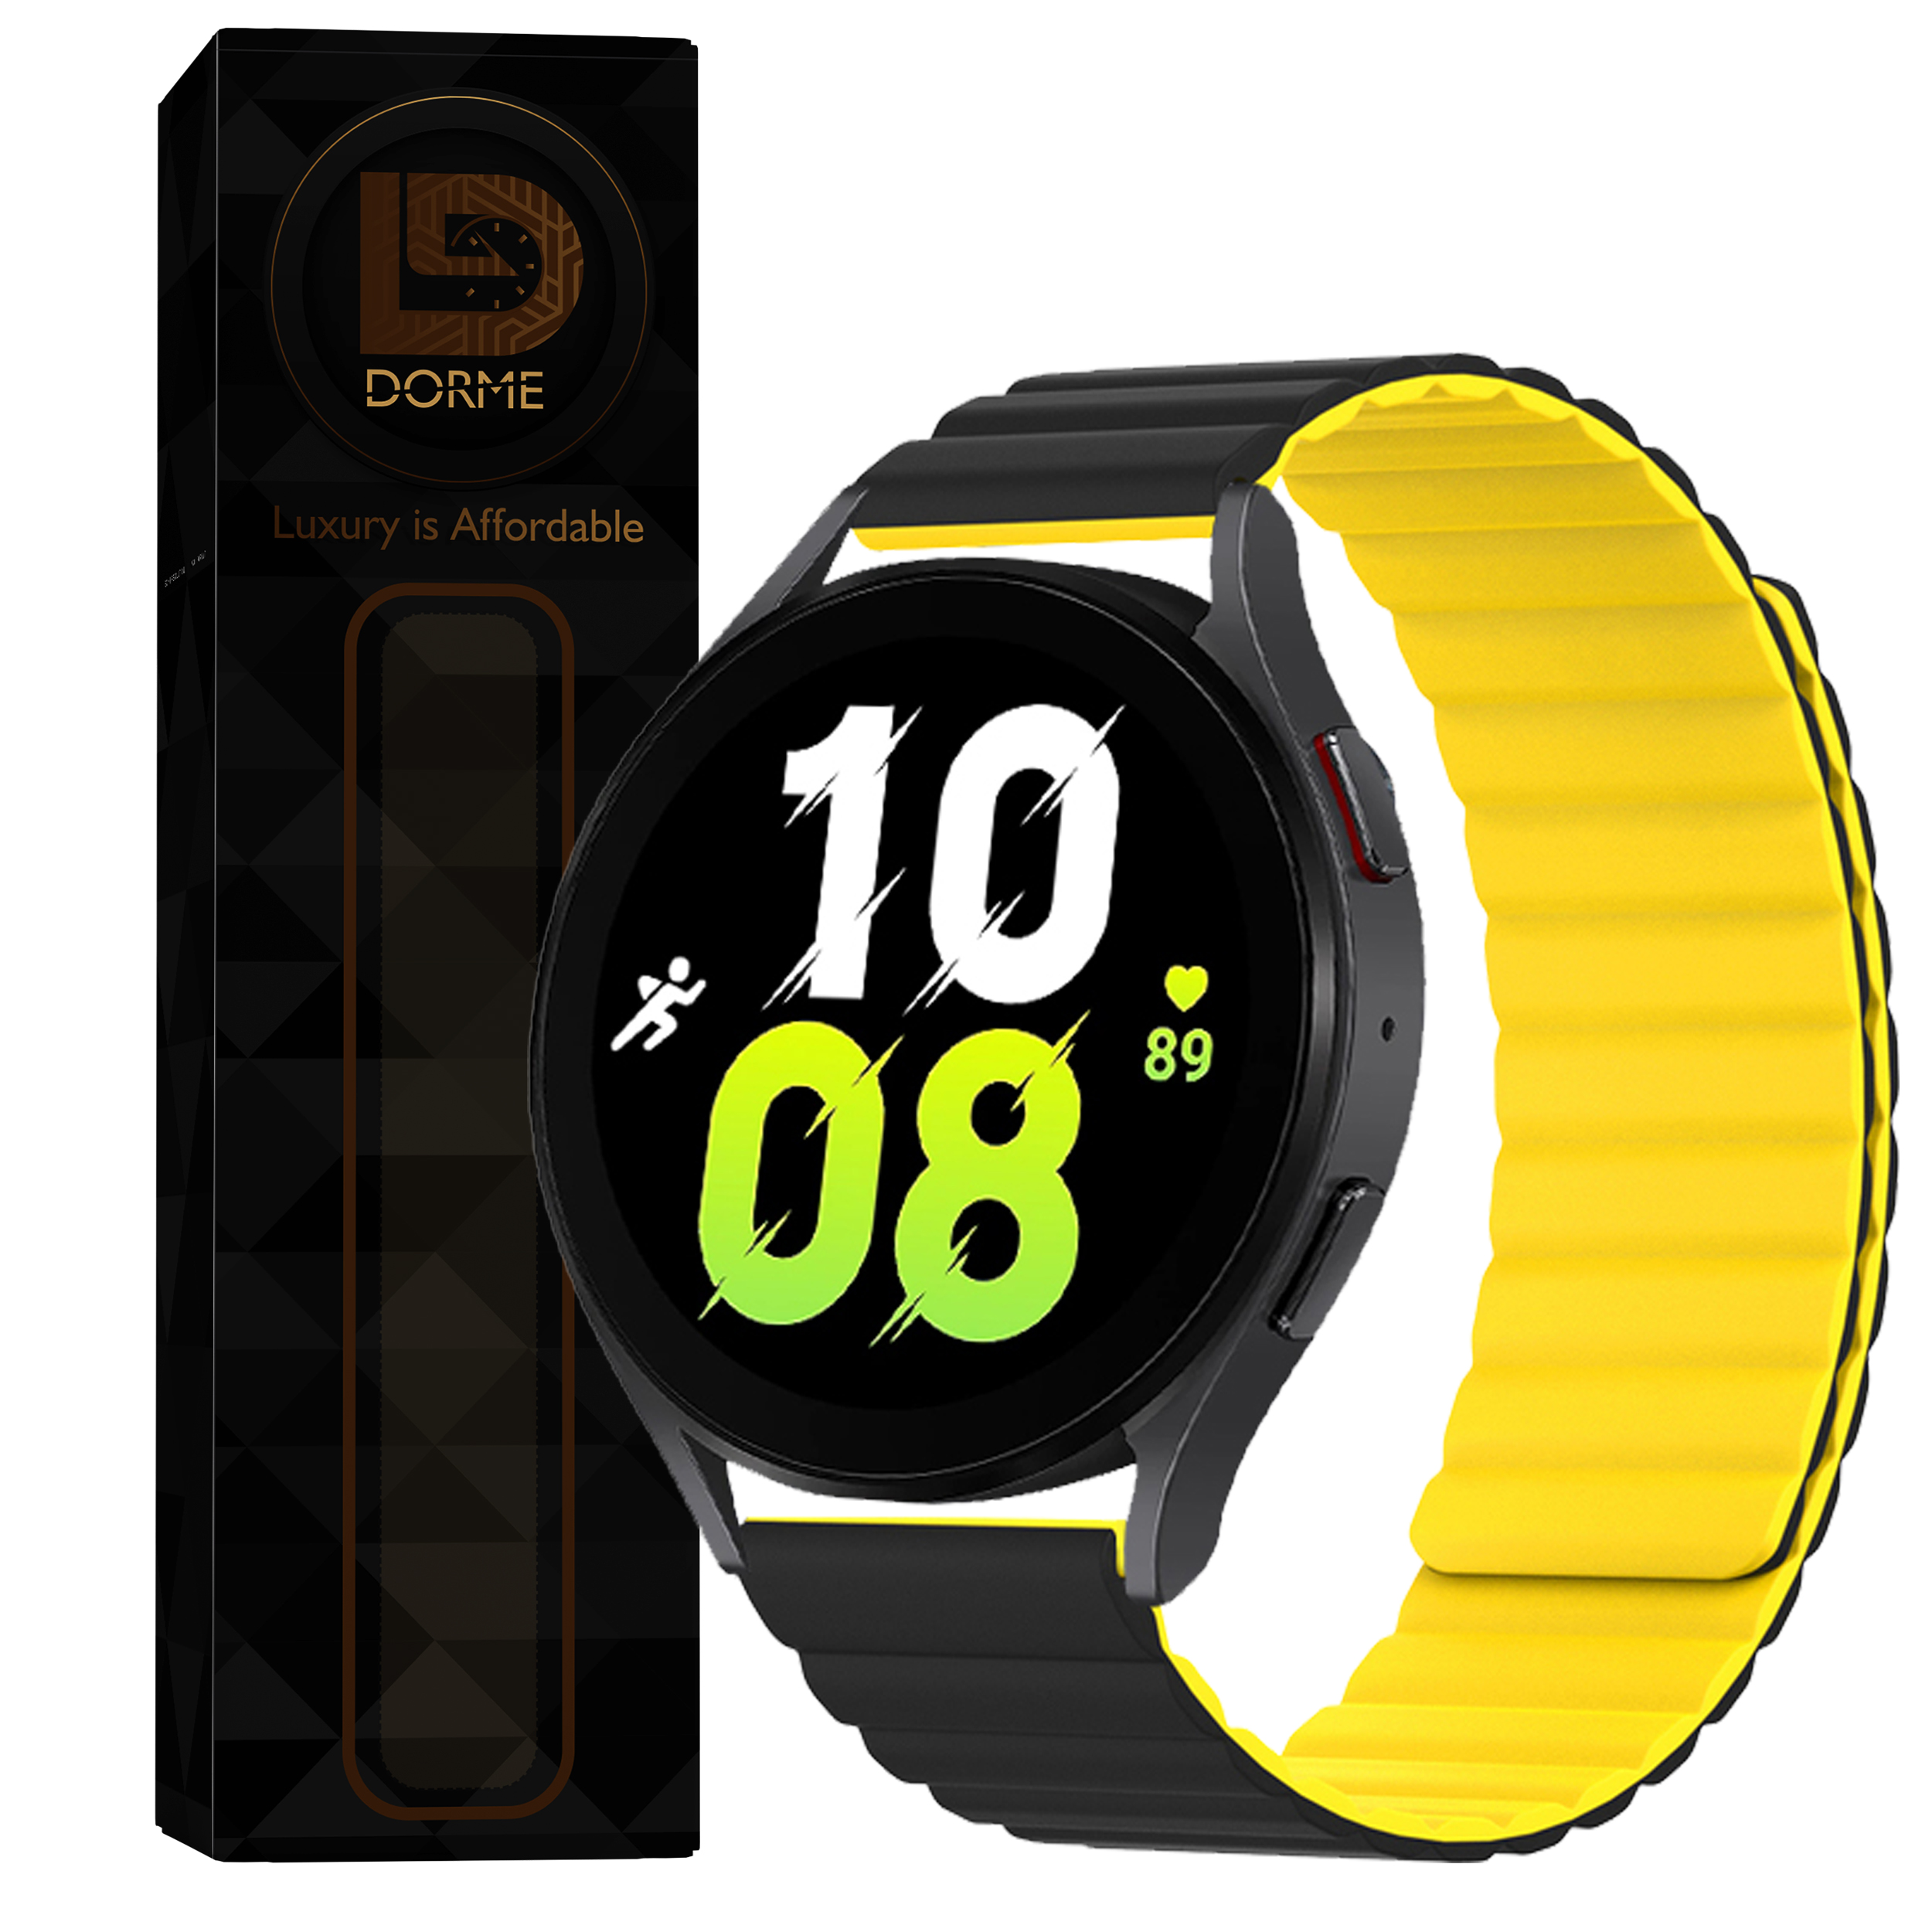 بند درمه مدل Linker  مناسب برای ساعت هوشمند هوآوی  Watch 2 Sport